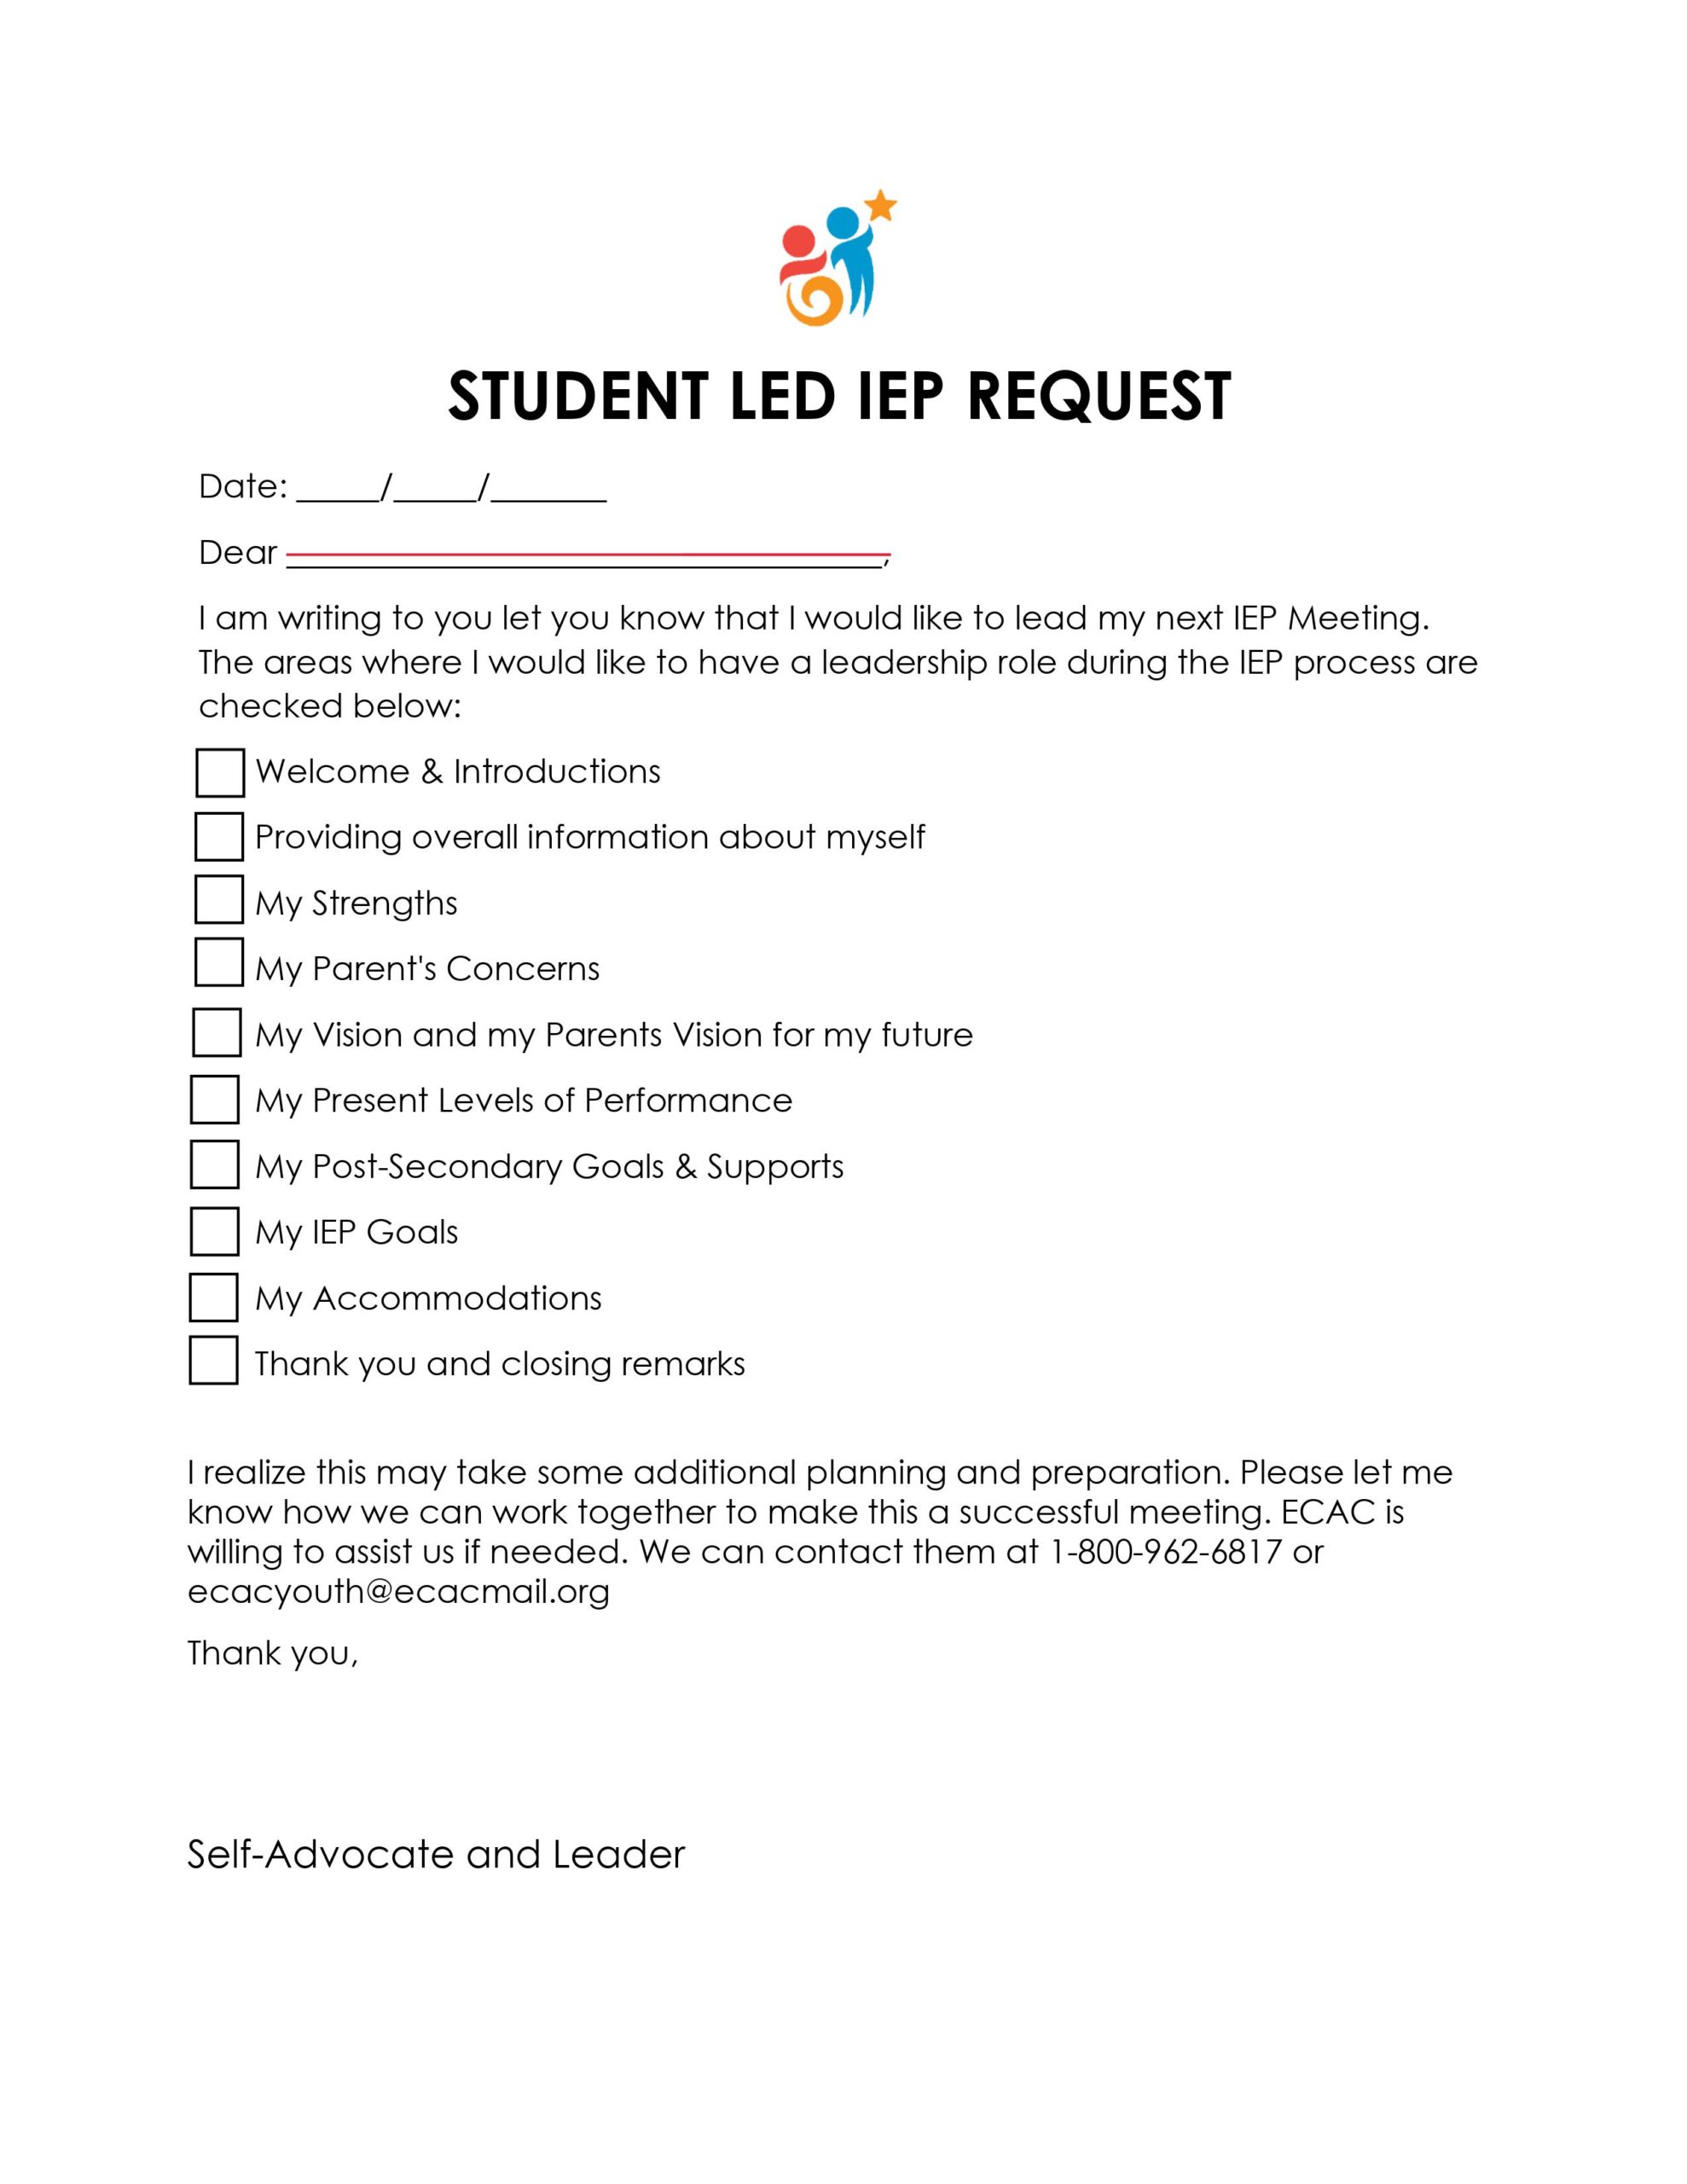 صورة للصفحة الأولى من نموذج طلب IEP بقيادة الطالب